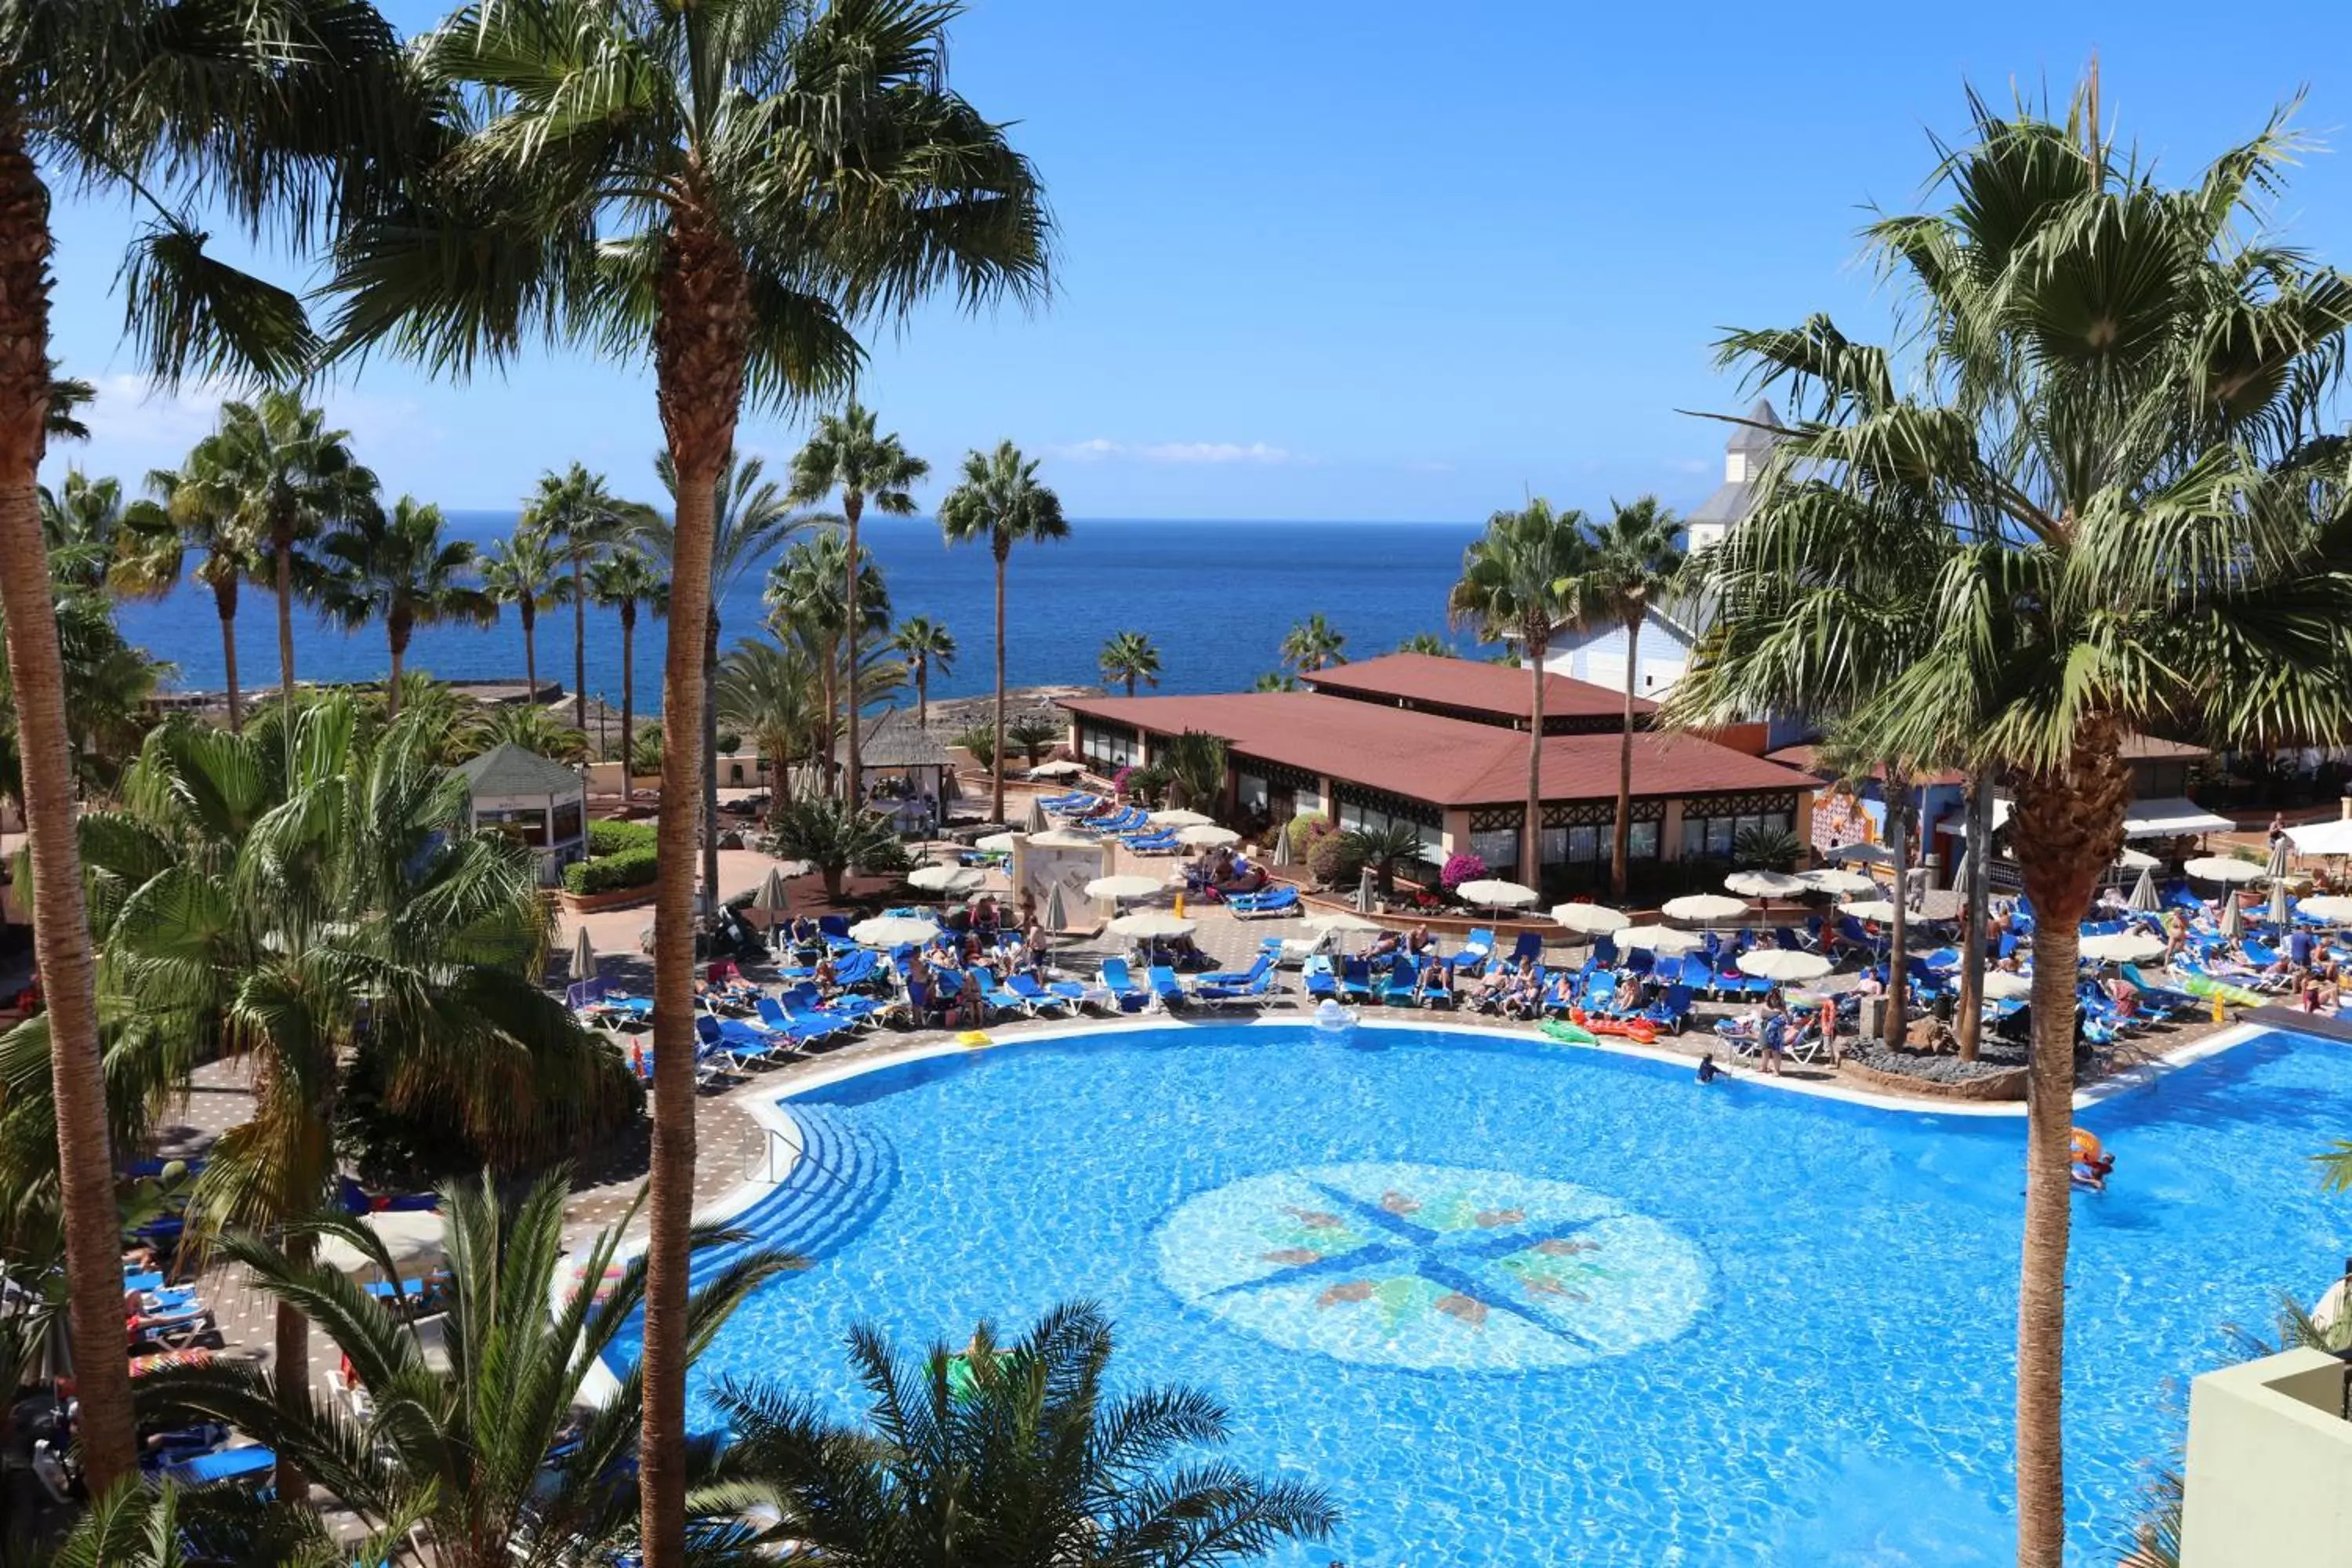 Property building, Pool View in Bahia Principe Sunlight Tenerife